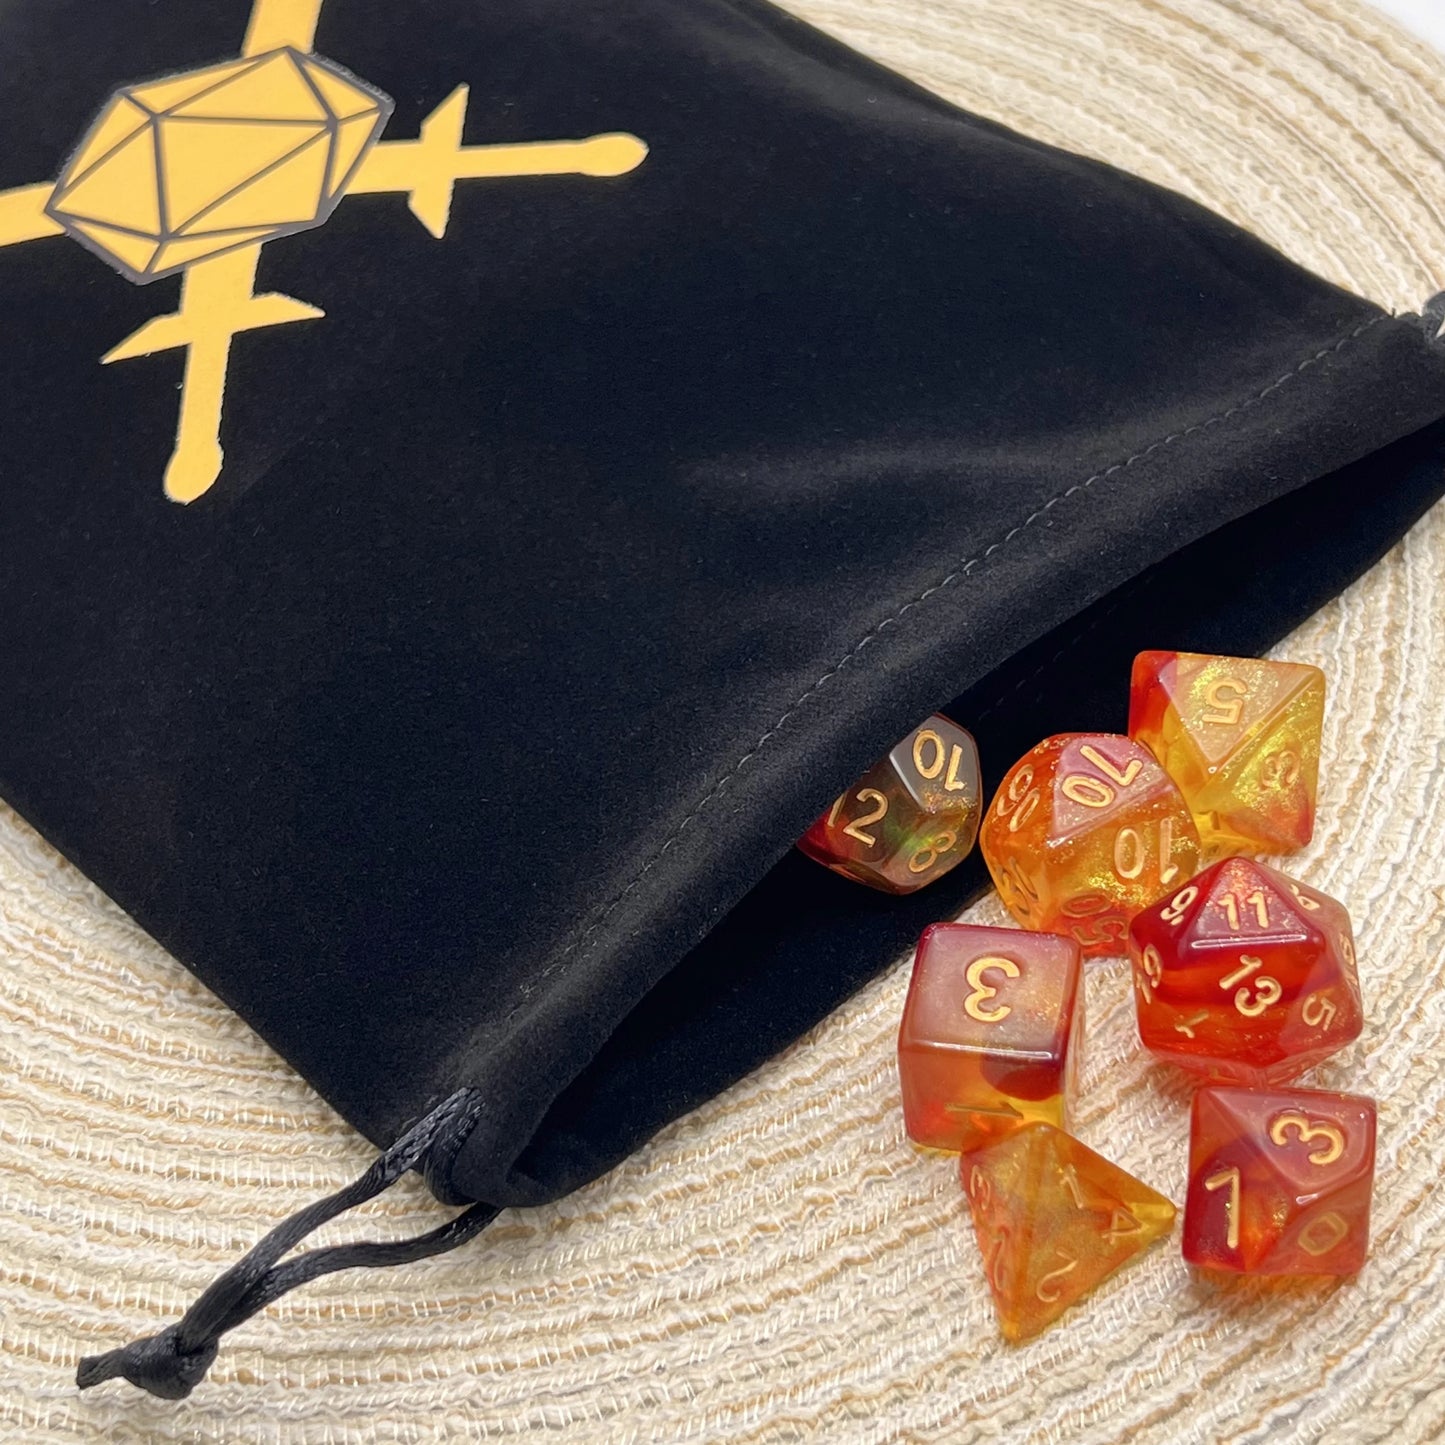 Bolsa de dados I, bolsa de terciopelo con cordón, tamaño Ideal para tarjetas de Tarot, oráculo, accesorios de dragones y mazmorras, joyería de runas, 1 Uds.